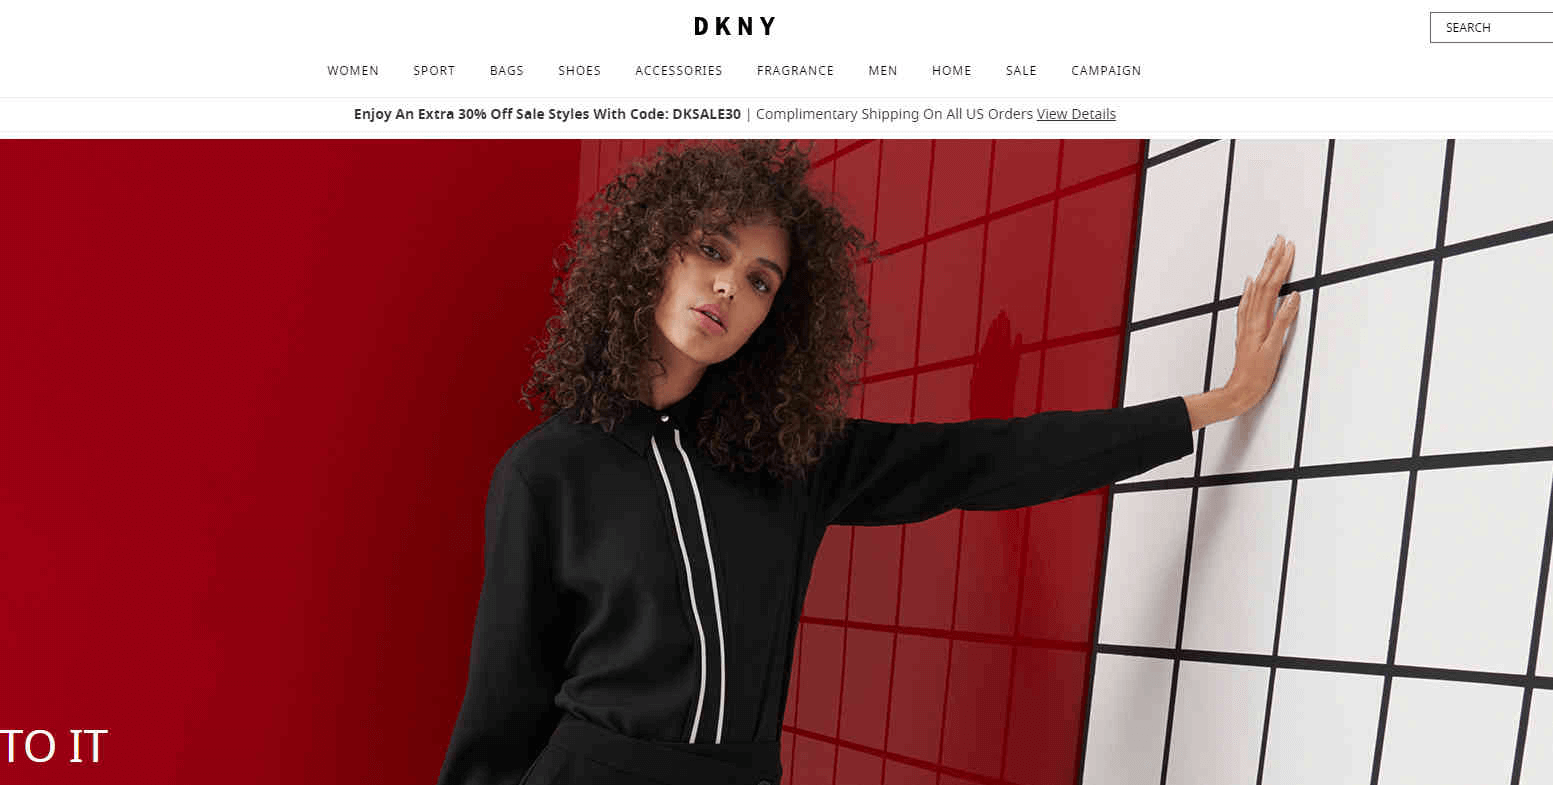 DKNY官网-唐可娜儿,前卫、时尚、休闲的时装品牌